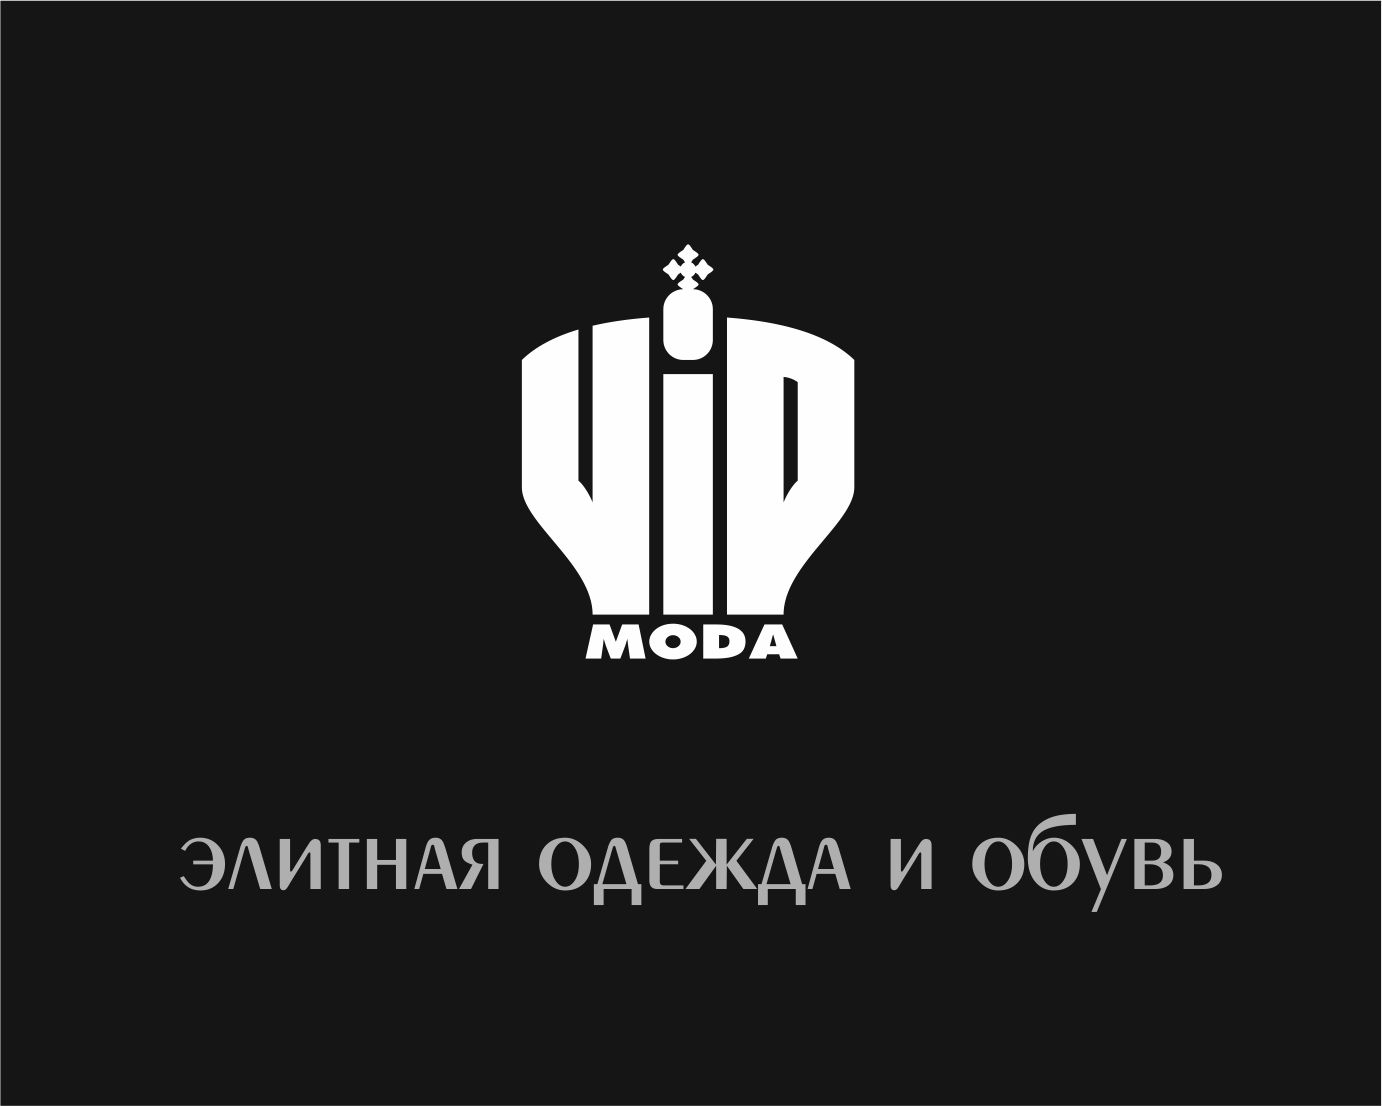 Лого и фирменный стиль компании ВИПМОДА  - дизайнер zooosad